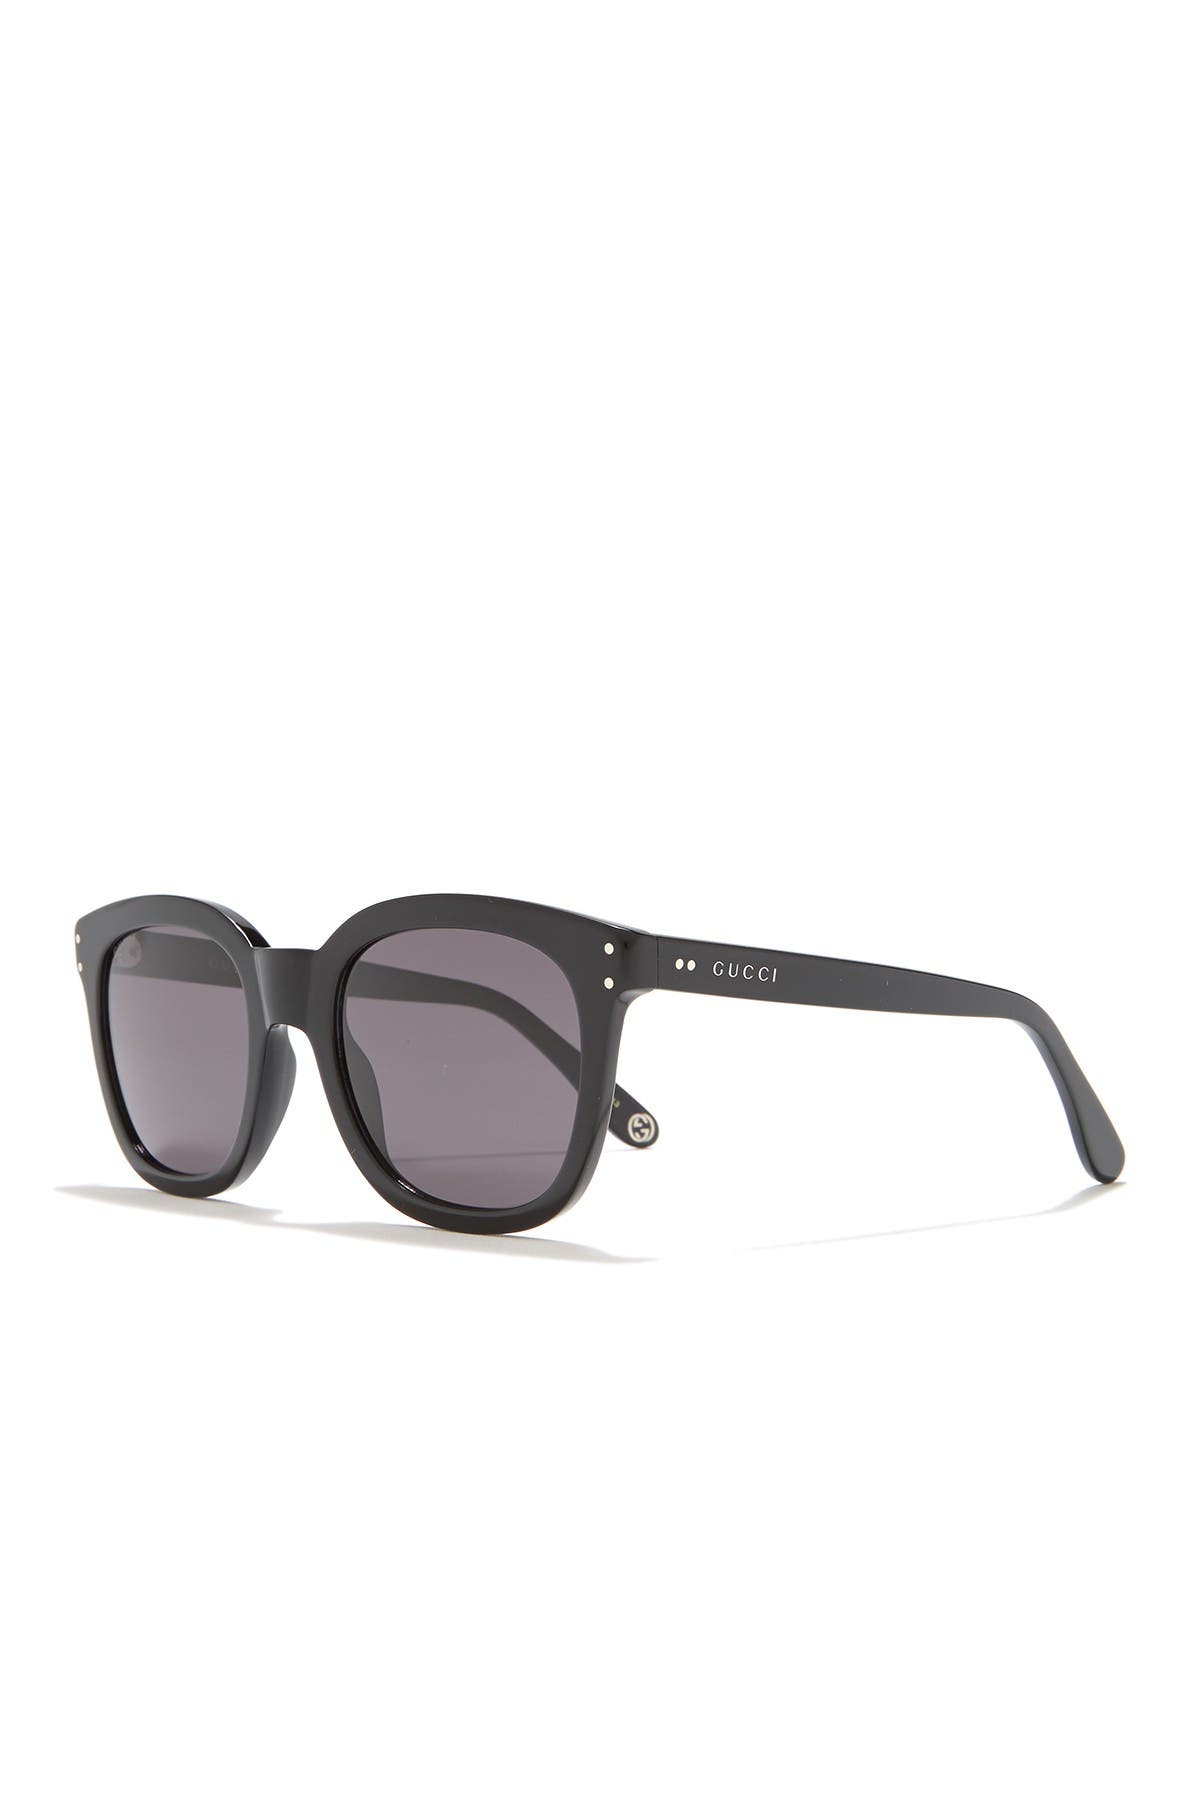 gucci 50mm round sunglasses